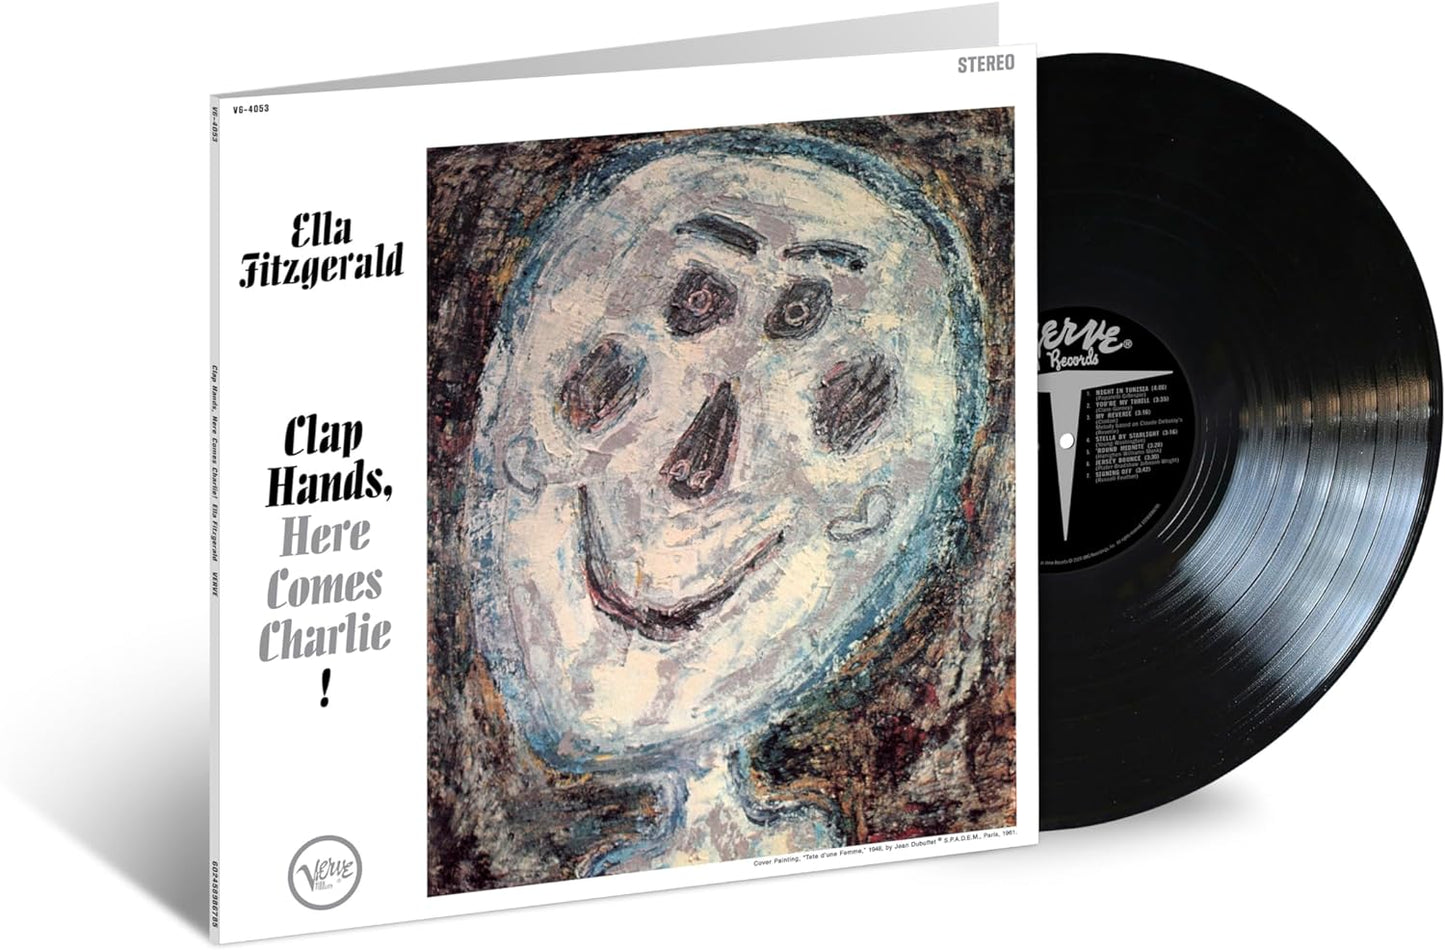 LP - Ella Fitzgerald - Clap Hands Here Comes Charlie! (Acoustic Sounds)